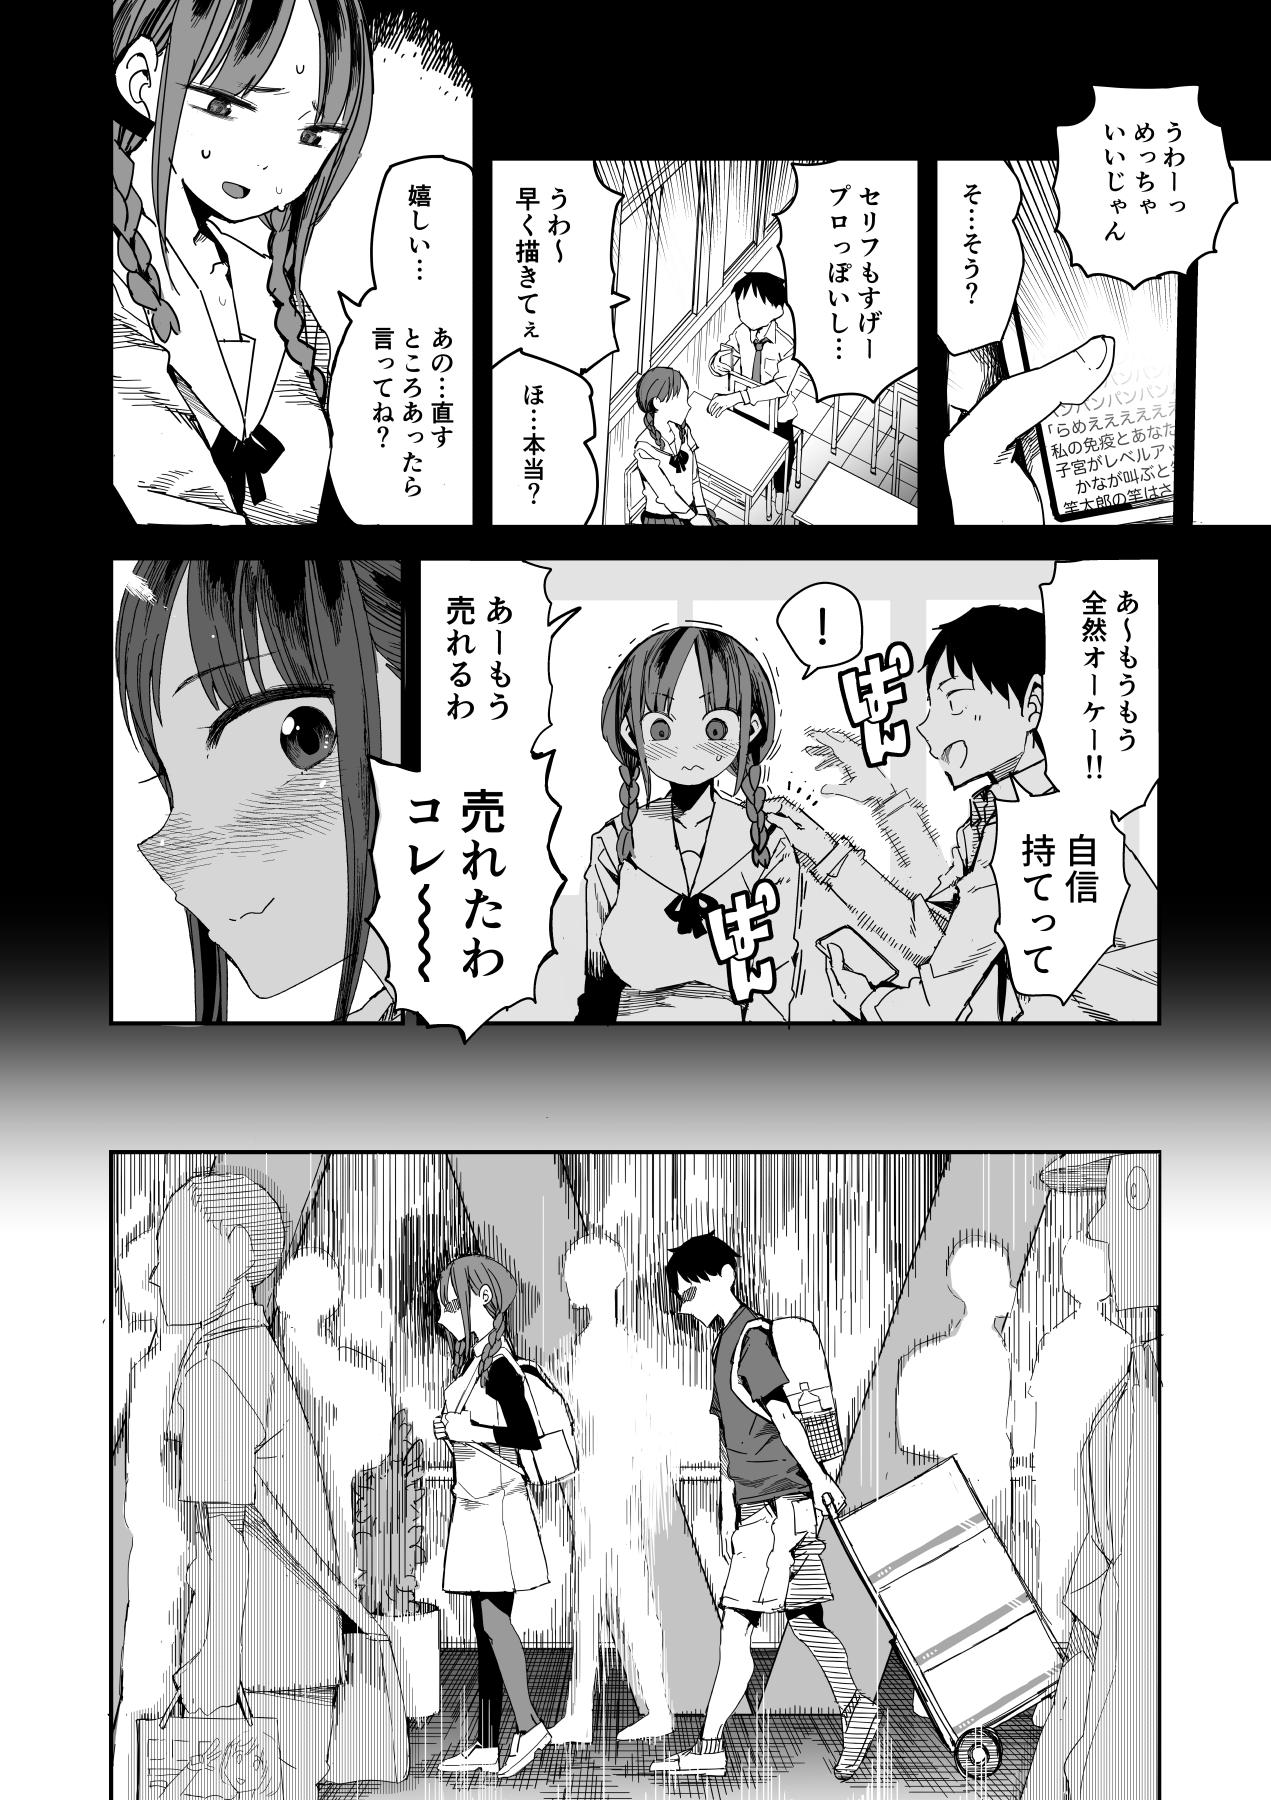 Wetpussy "Kanbai Shimashita" - Original 18 Year Old - Page 6